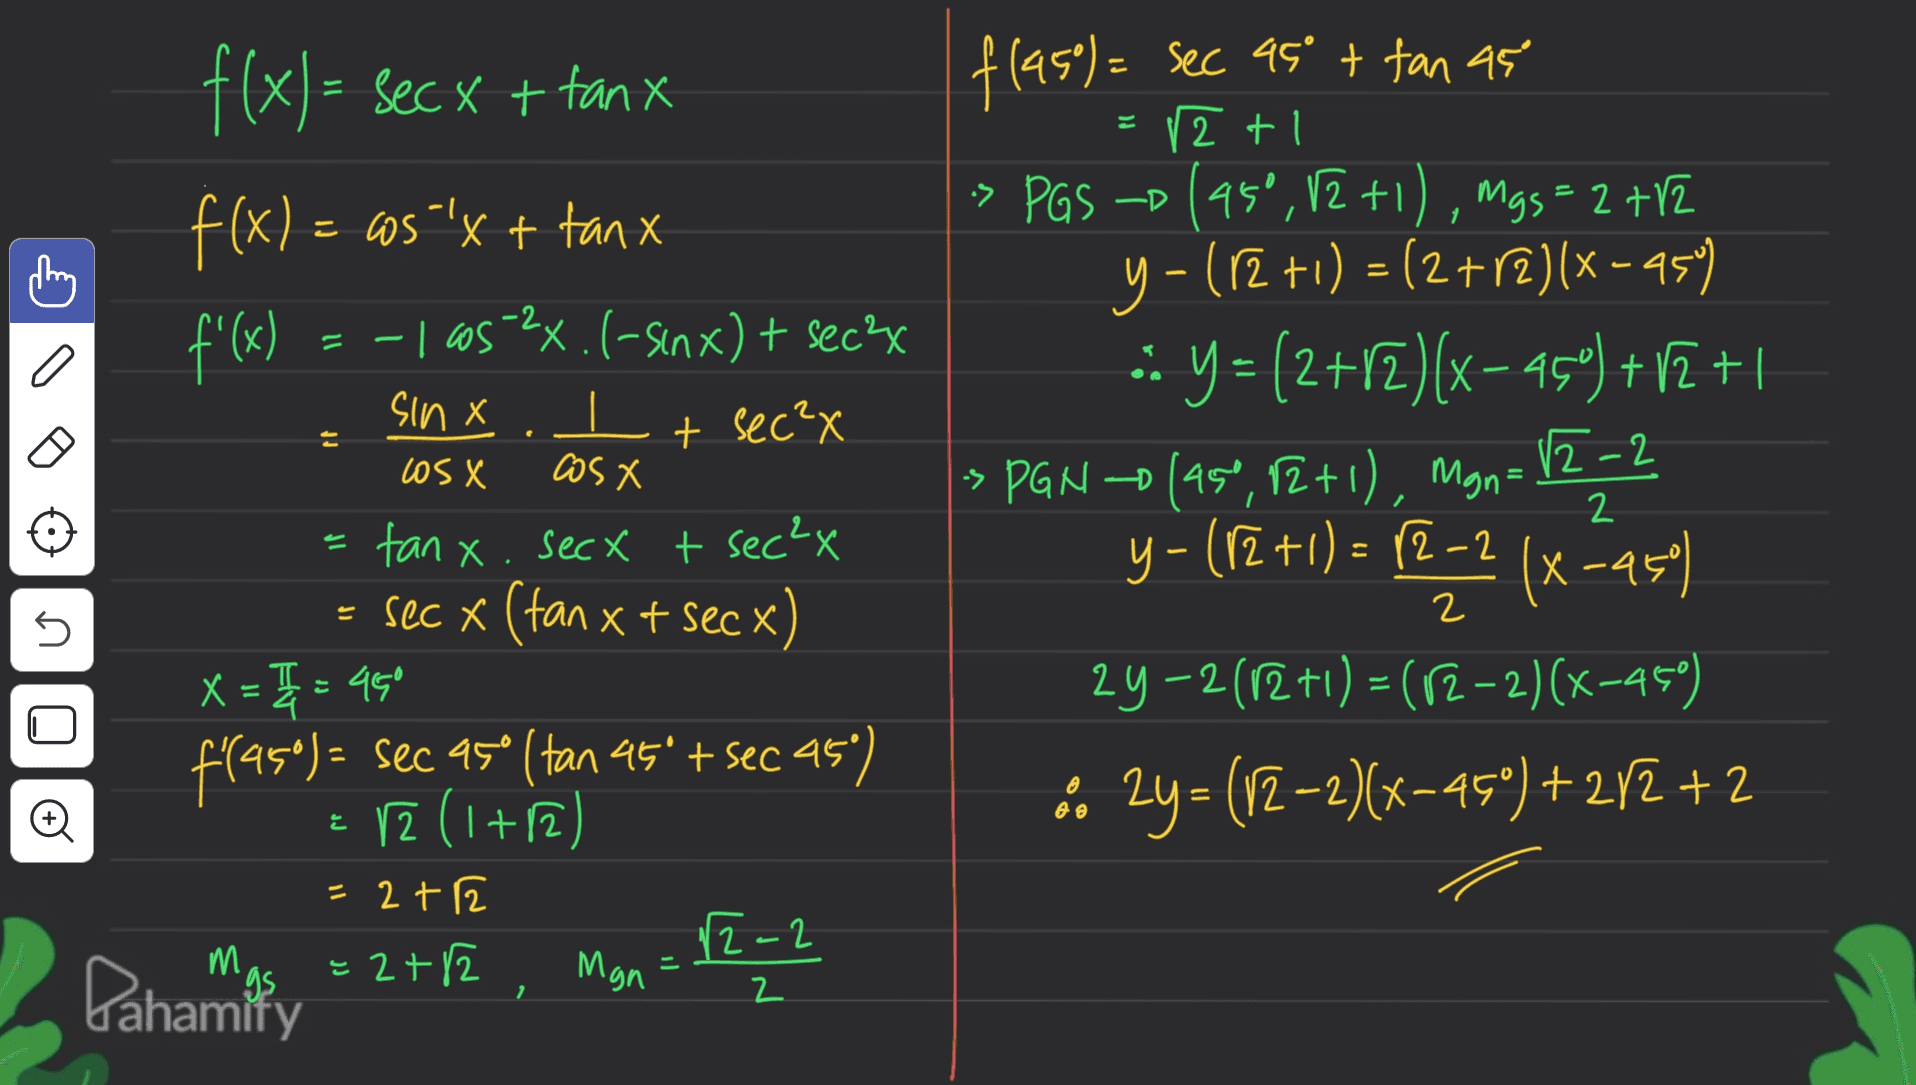 1 z + -2 a - sin X e At f(x)= sec x + tanx f(x) = cos "'x + tanx f'(x) = -1 605>2x. (-senx) + secs (-) It sec?x as X tanx. secx + sec²x = sec x (tan x t sec x x = 3 = 450 f'[95°) = sec 95° (tan 45º = sec 45") fraso + r2 ( (1+12) = 2+2 12-2 =2+2 Man flase) = sec asº + tan as = 2+1 ł tl > - -> PGS –D (950,12 +1), mgs = 2 +12 2 y - (12 +1) = (2+2)(x - 454 :: Y = (2+12)(x-45') +12+1 » PGN (45°, 12+1), Man= 12-2 y - (12 +1) = (2-2 ) = 12,52(x -25) (x 2y-2012 +1) = (12-2)(x-450) .. 2y=(12-2)(x-45") +242 + 2 los X 2 s n - AO re M = Pahamity 2 2 